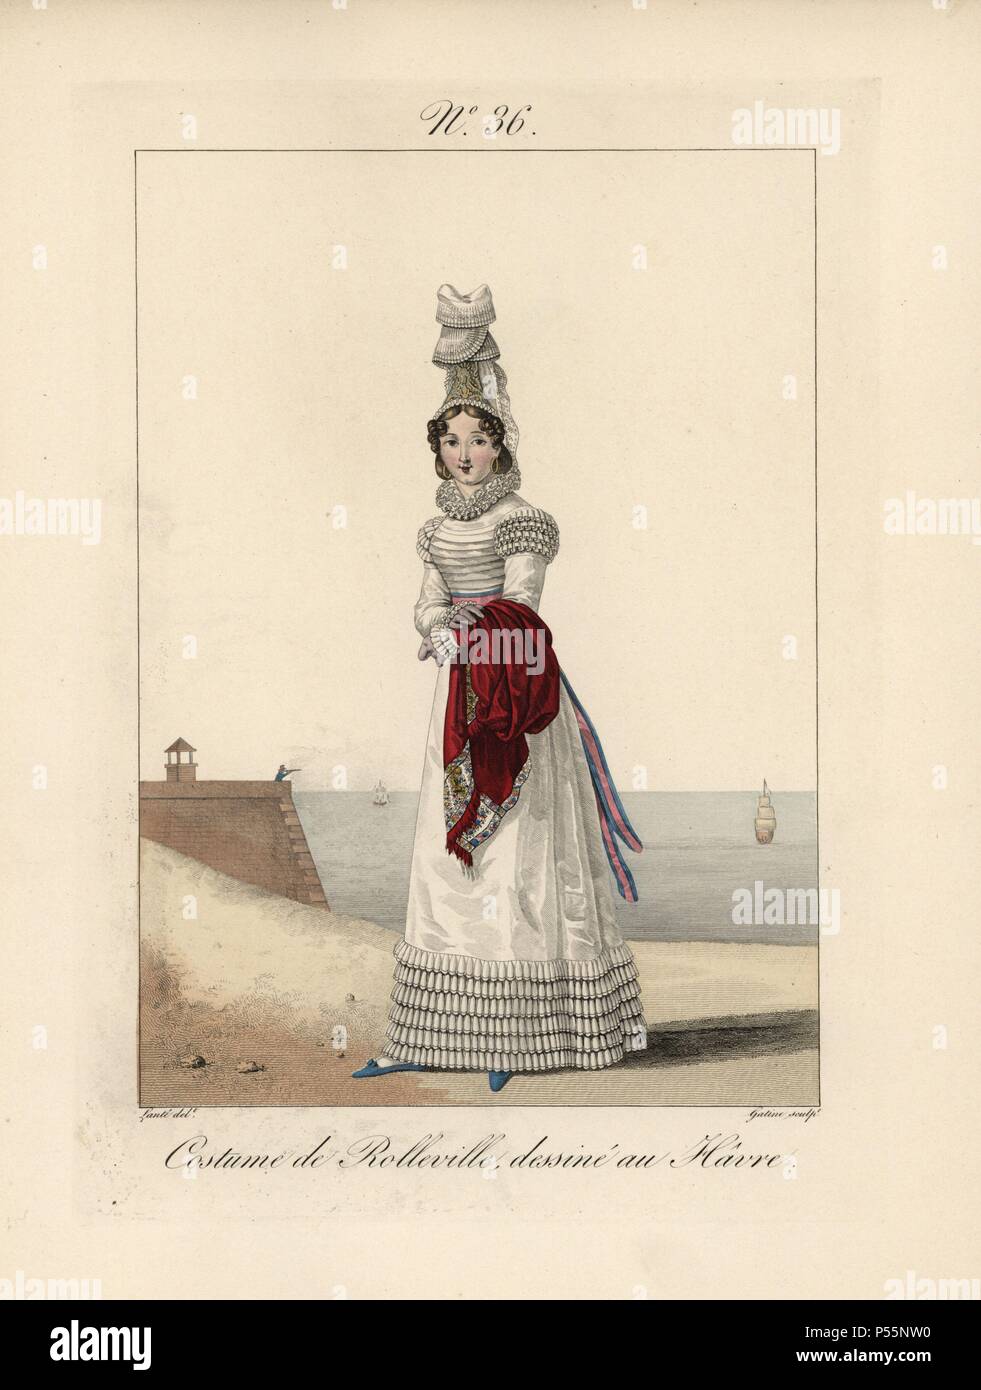 Femme en costume de Rolleville, dessiné au Havre. Elle porte un grand  chapeau rabattu bavolet de dentelle, avec dentelle plissé ruff décorations  sur les épaules, poignets et le bas de sa robe.